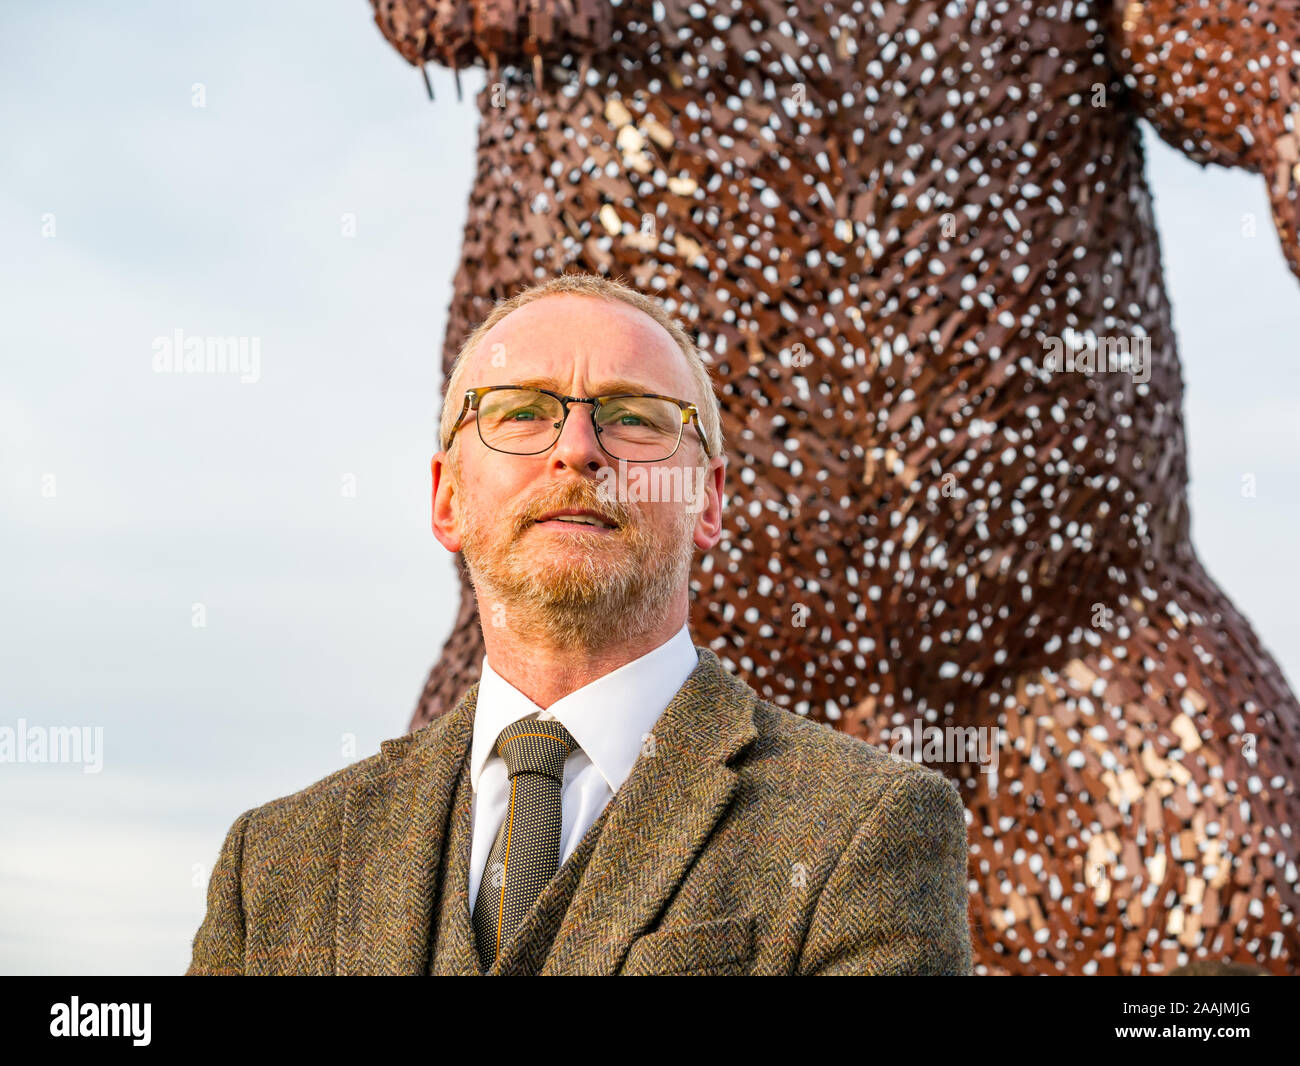 Dévoilement de la sculpture de l'ours pour célébrer la vie de John Muir par sculpteur Écossais Andy Scott, Dunbar, East Lothian, Scotland, UK Banque D'Images